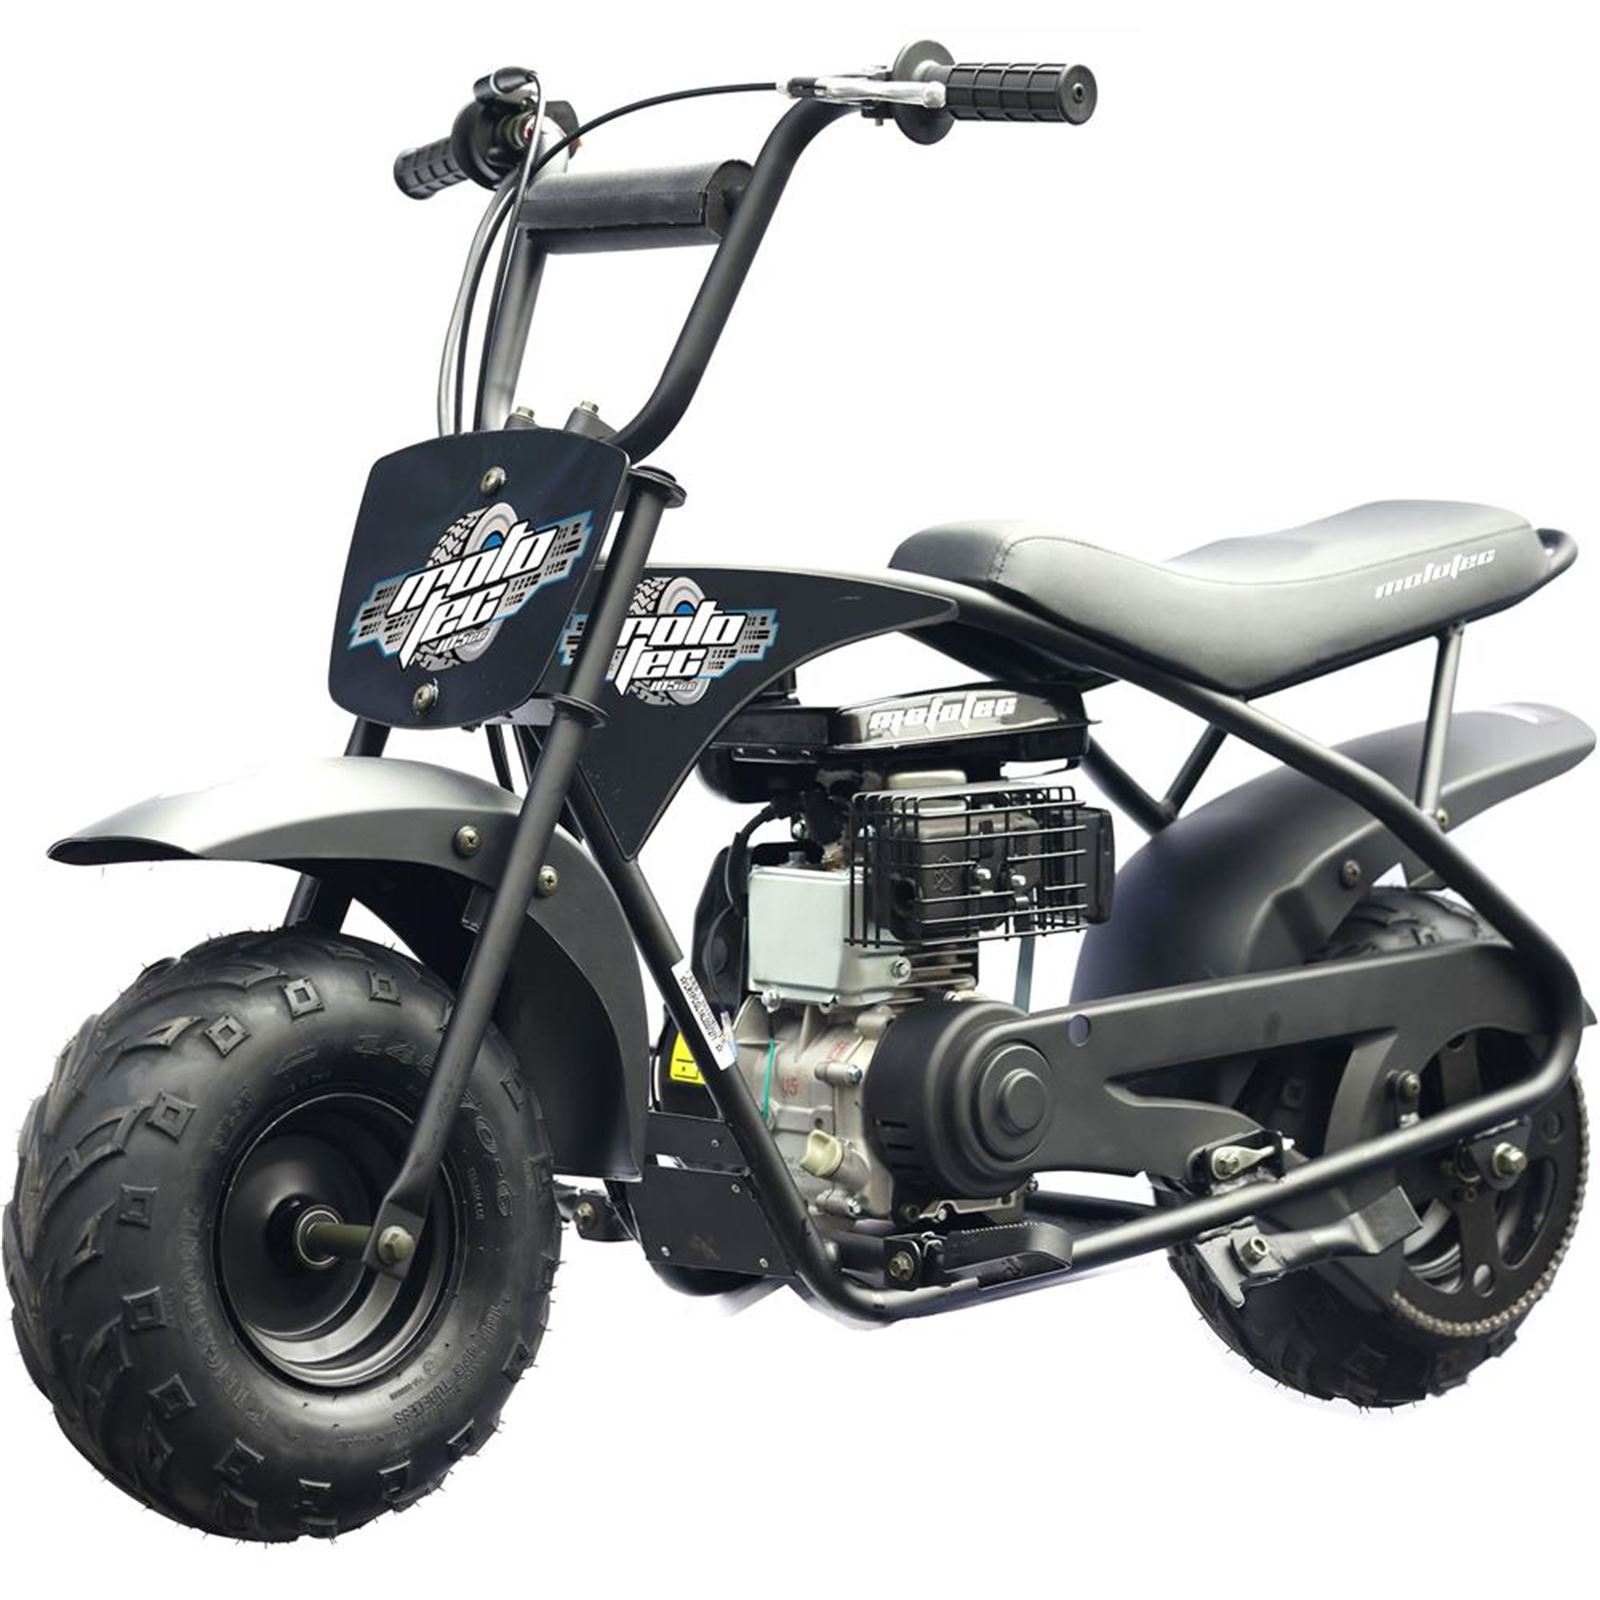 MotoTec USA 105cc 3.5HP Gas Powered Mini Bike